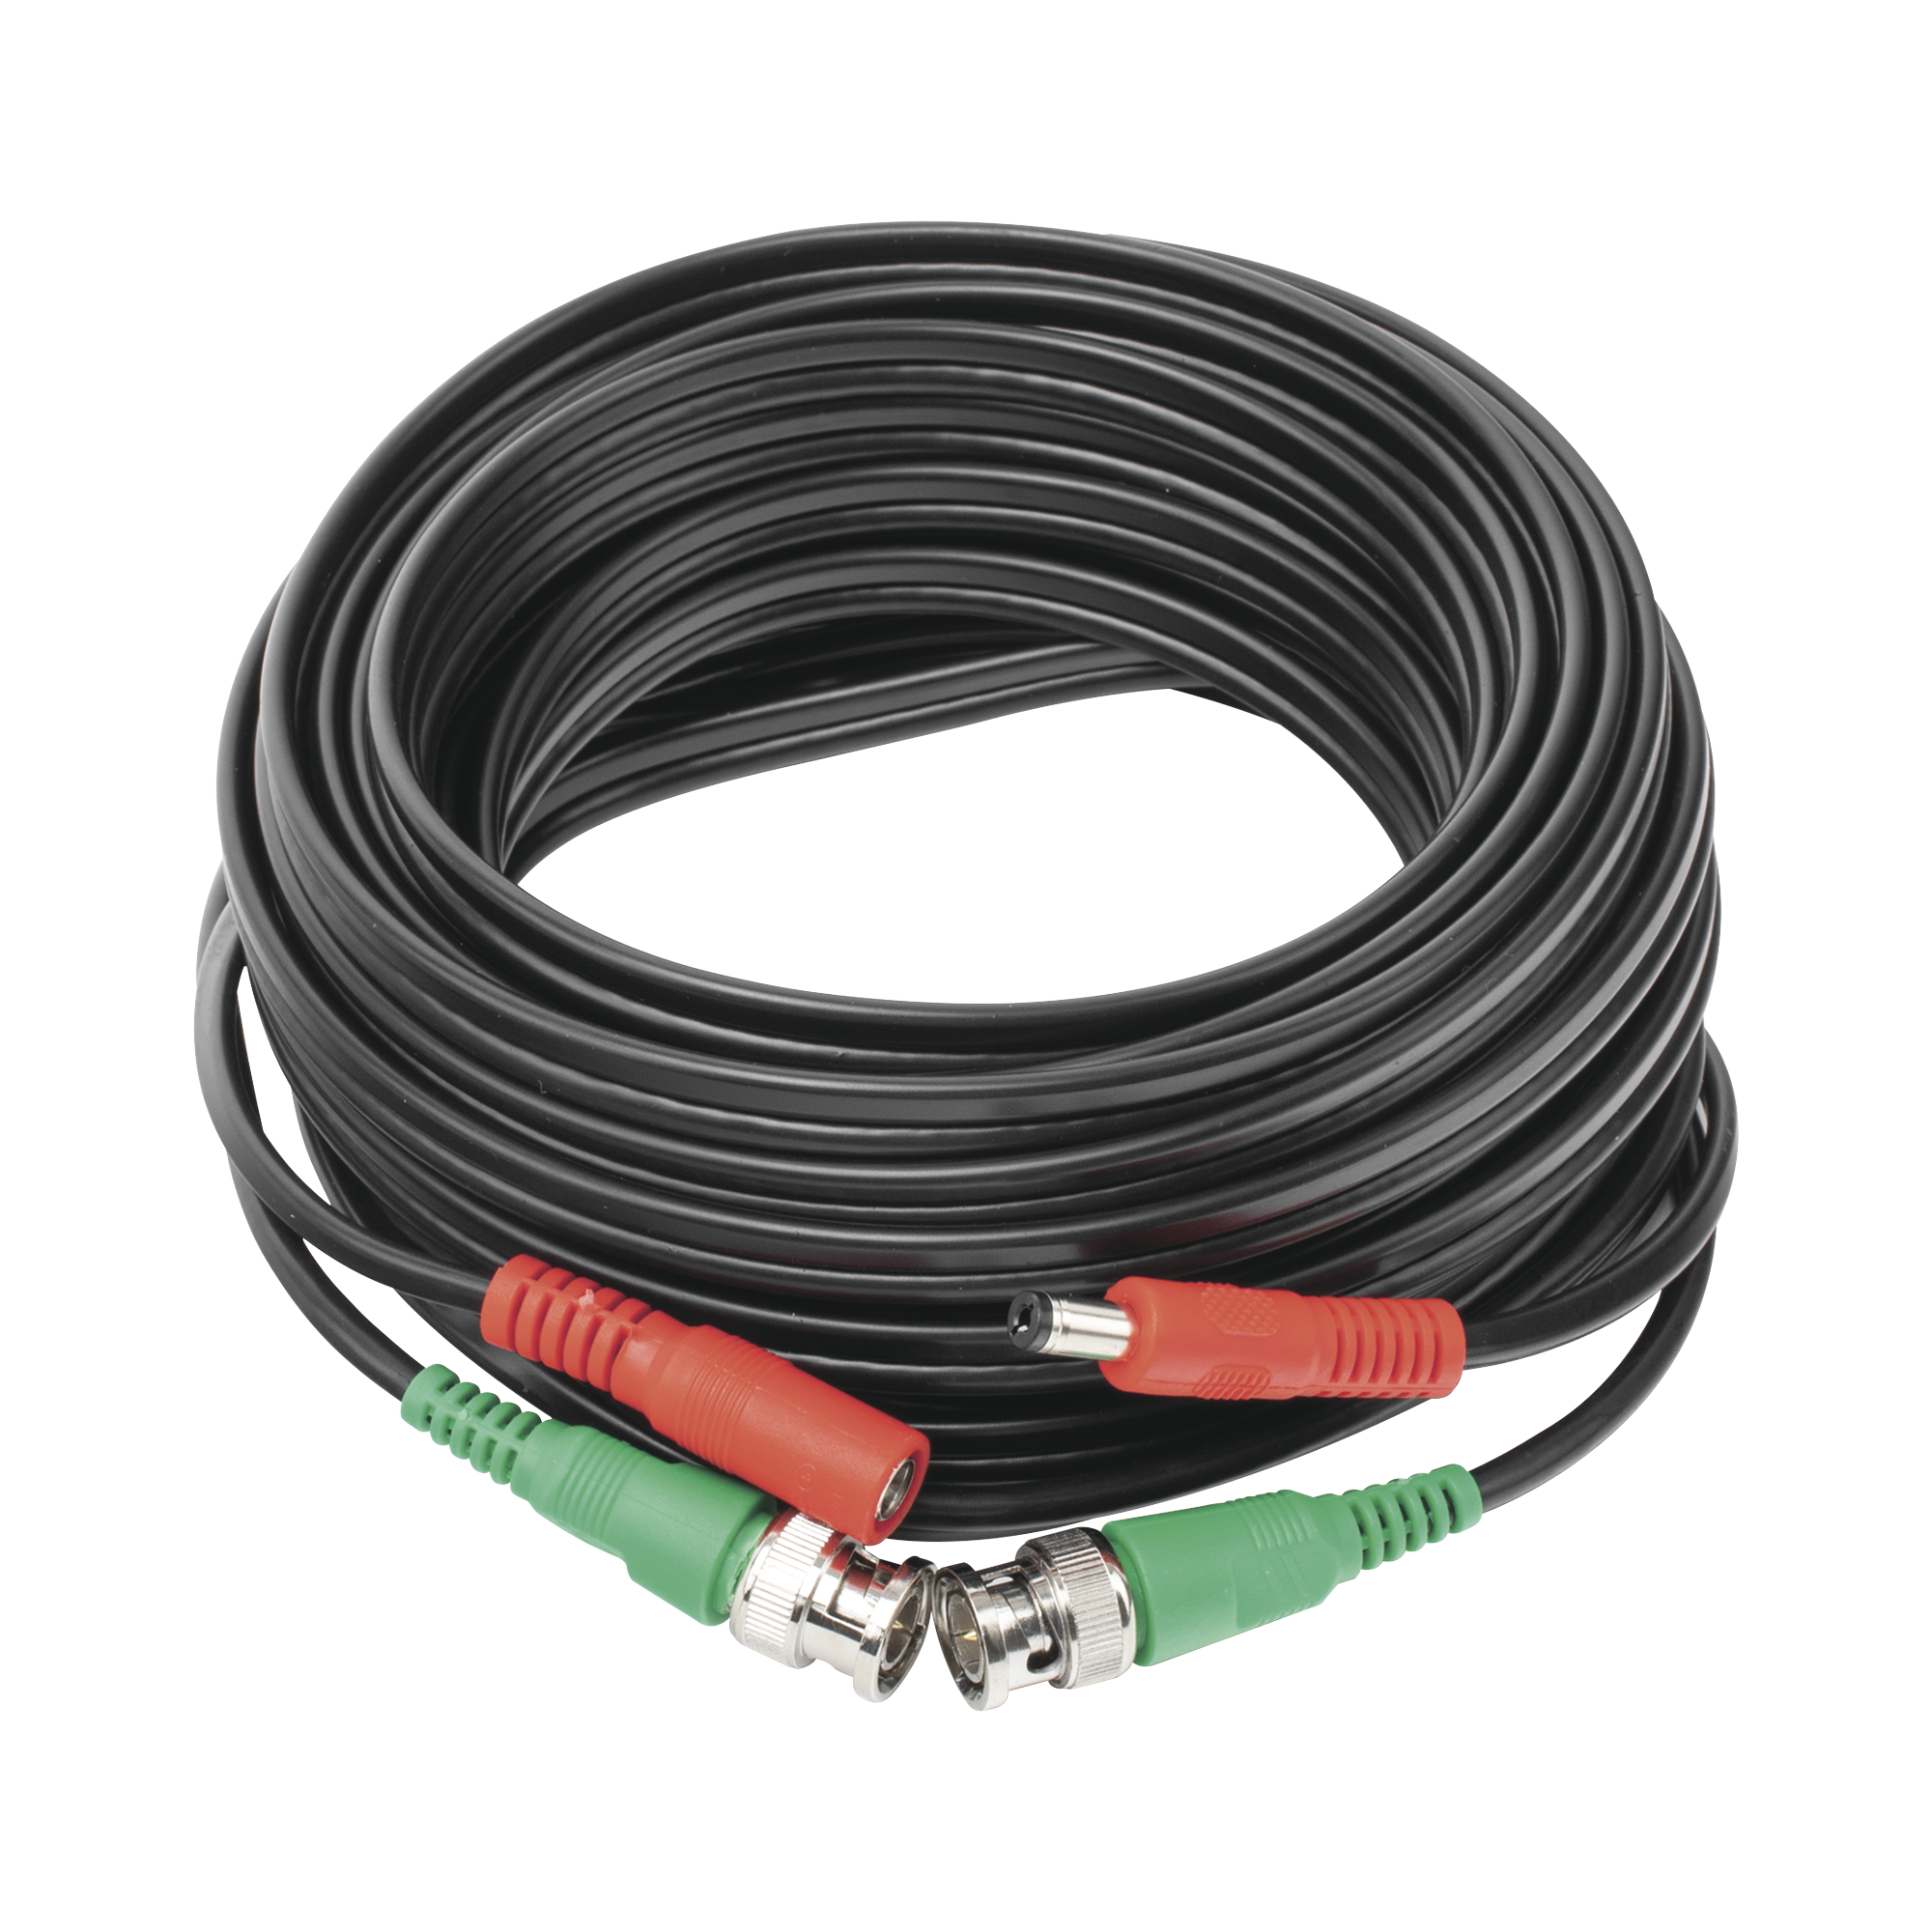 Cable coaxial ( BNC RG59 ) + Alimentación / SIAMÉS / 10 Metros / 100 % COBRE / Para Cámaras 4K  / Uso interior y exterior